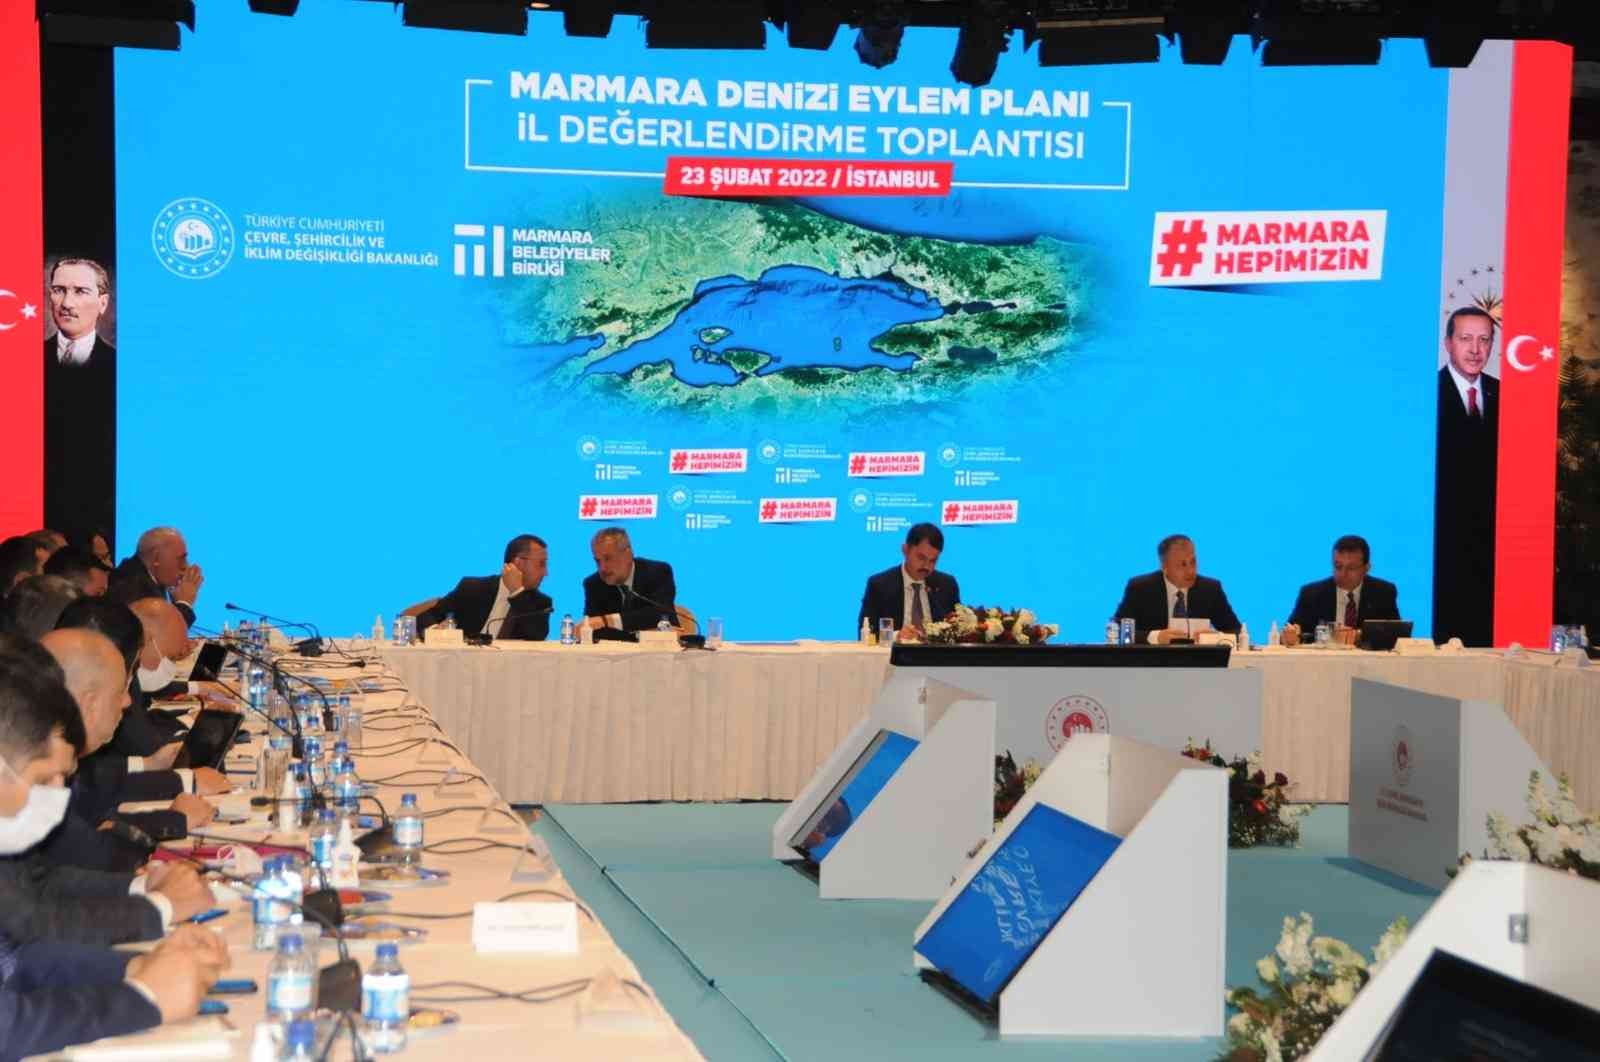 Çevre Şehircilik ve İklim Değişikliği Bakanı Murat Kurum, “Marmara’da yapmış olduğumuz bilimsel araştırmalar, çalışmalar neticesinde, Marmara ...